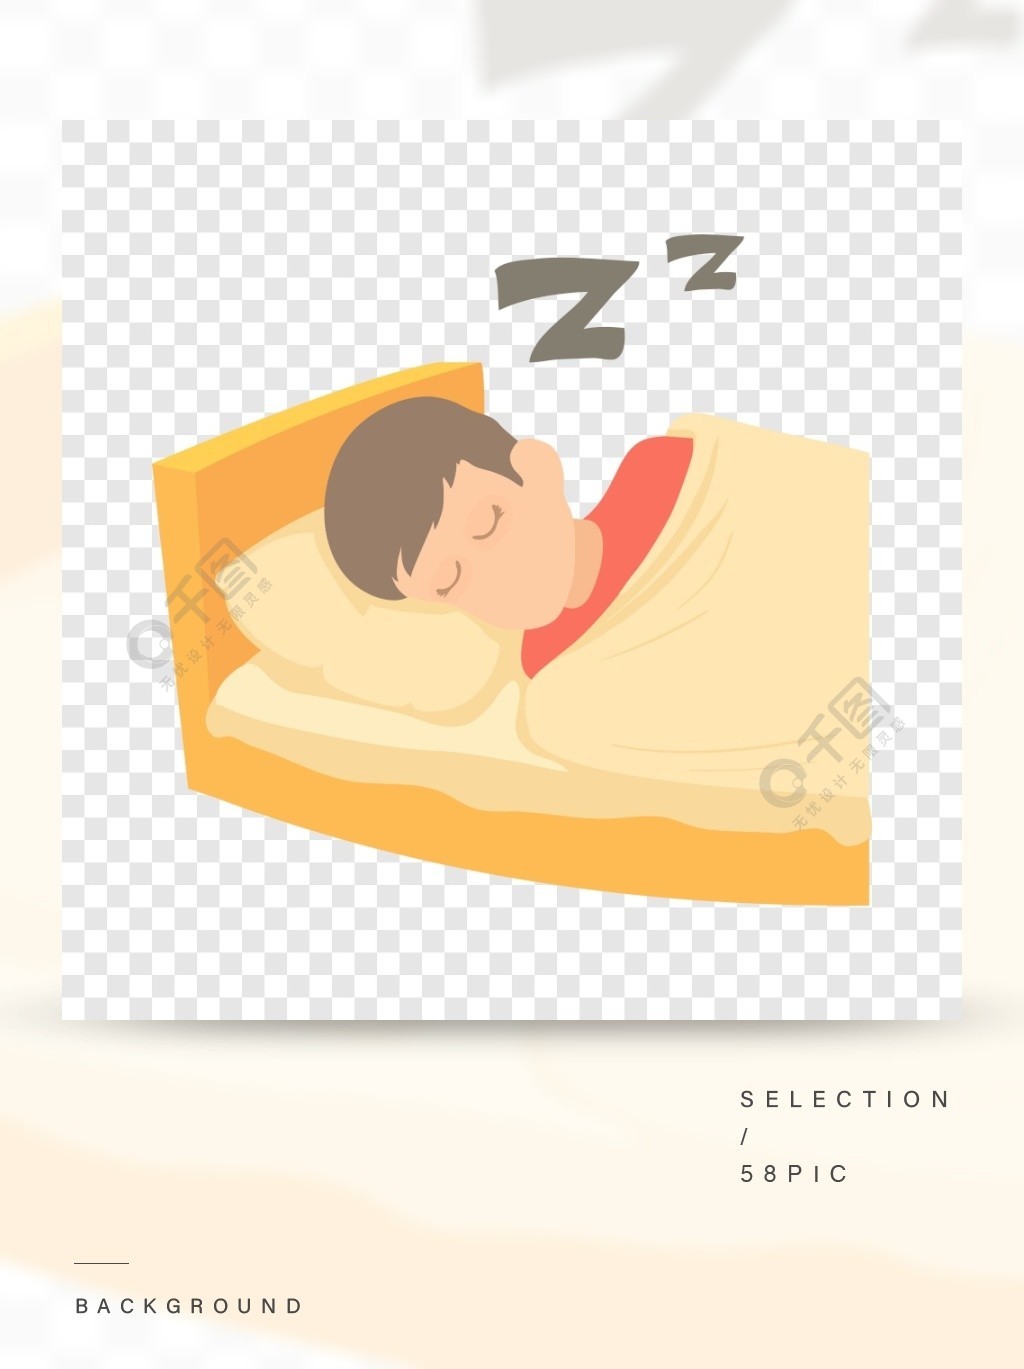 的图标男孩睡觉网的传染媒介象的动画片例证男孩睡觉的图标,卡通风格